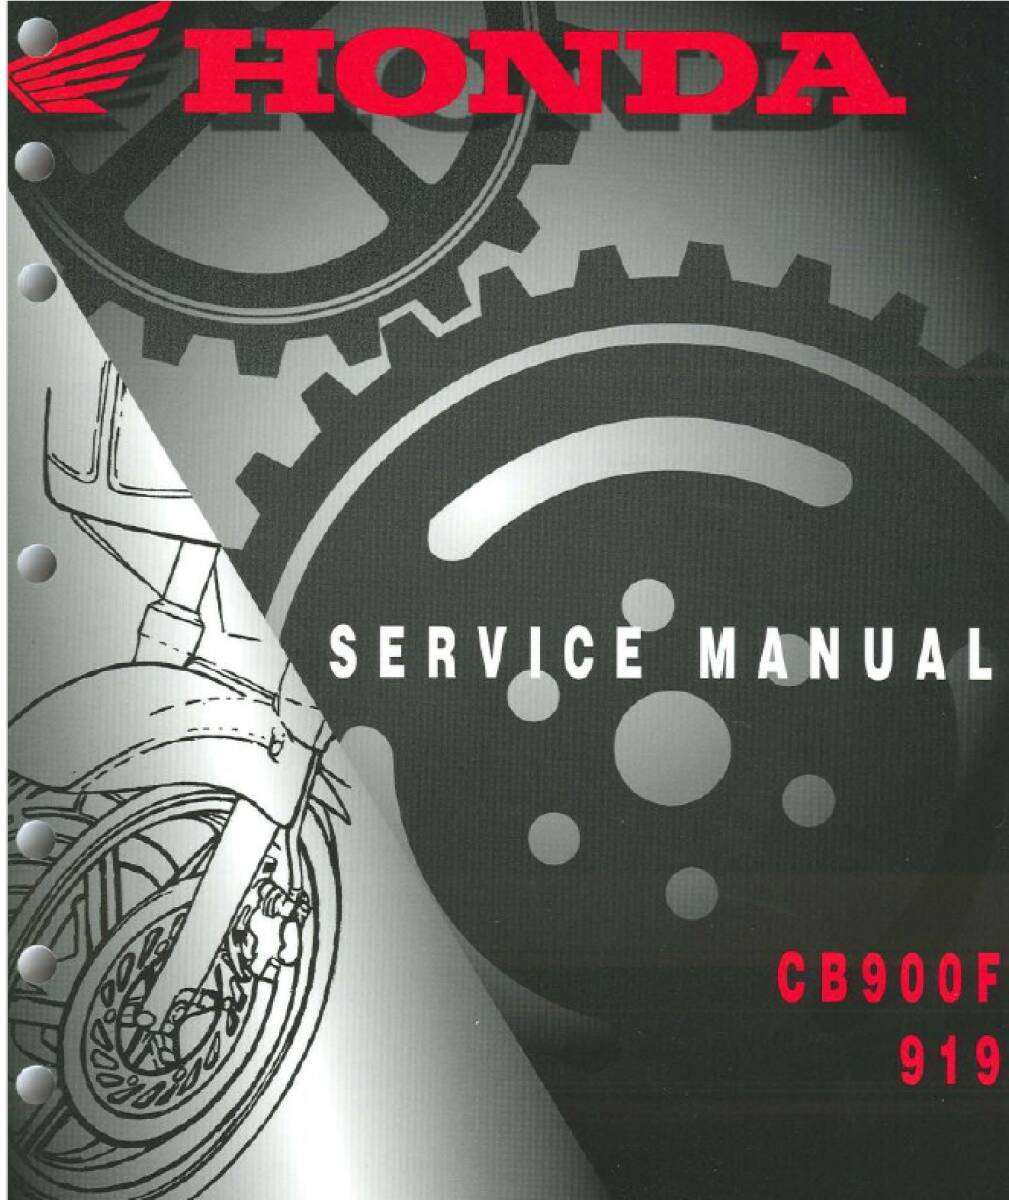 CB900F 919 サービスマニュアル 英語版 PDFファイル メールで送信の画像1